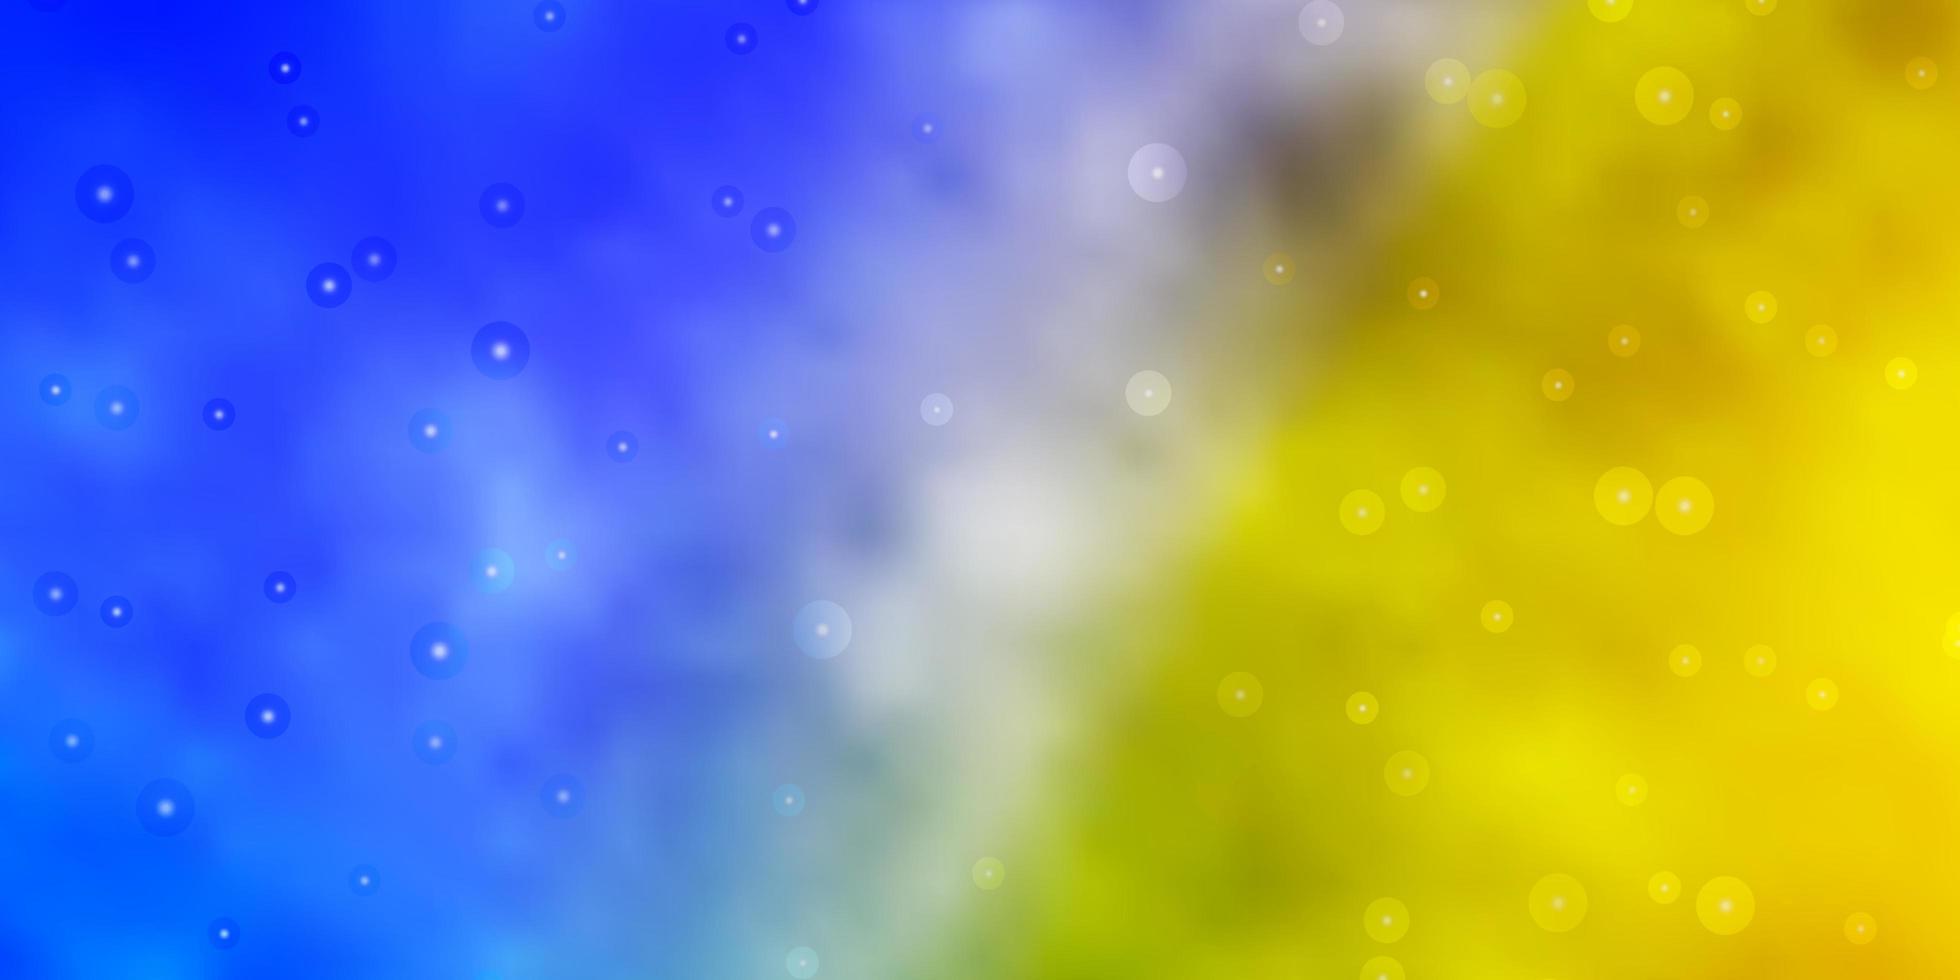 Plantilla de vector amarillo azul claro con estrellas de neón ilustración colorida en estilo abstracto con patrón de estrellas degradado para envolver regalos